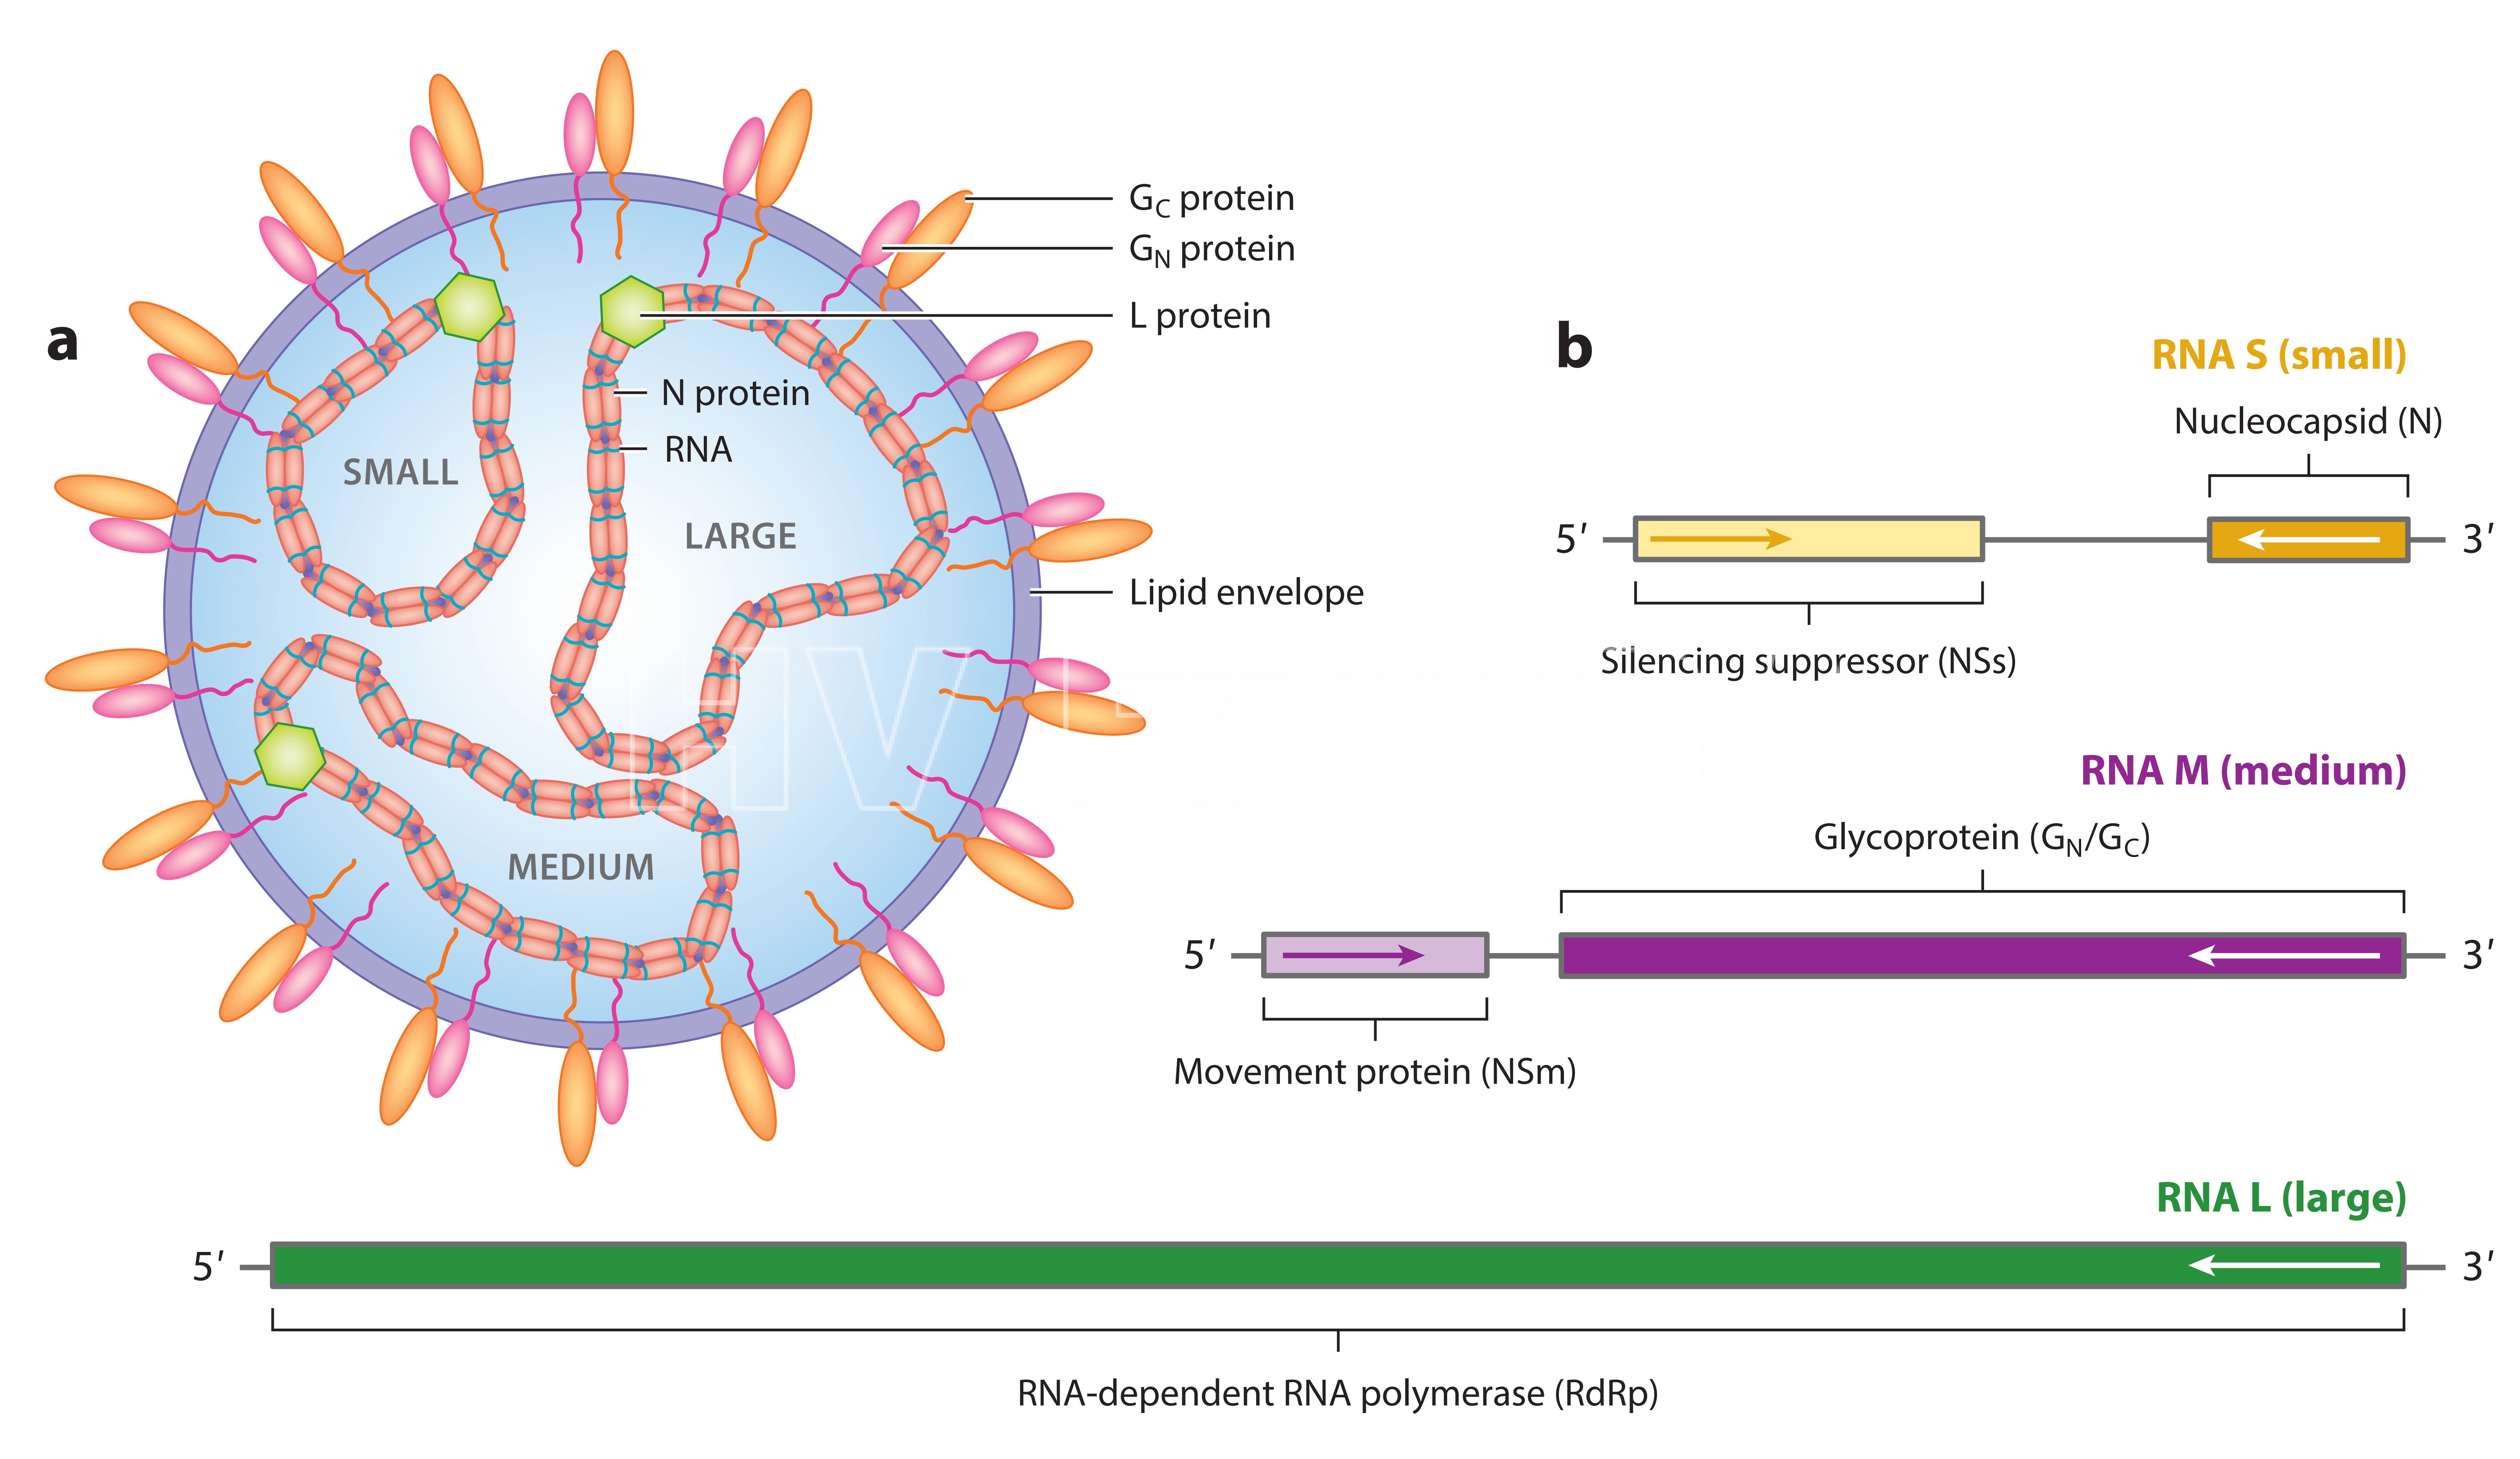 (a) Representación del virión tospovirus. El virión está formado por una envoltura lipídica, que encapsula los tres ARN genómicos virales, nombrados según su tamaño pequeño, mediano y grande, respectivamente. El ARN viral está encapsulado por la proteína nucleocápside (N), que se ha demostrado que interactúa con las colas citoplasmáticas de las glucoproteínas virales que abarcan la membrana (GN y GC).  (b) Organización del genoma de tospovirus, que indica los marcos de lectura abiertos de los genes virales encontrados en cada ARN genómico. Los ARN genómicos de tospovirus codifican productos génicos en sentido negativo o orientación ambisense. Fuente: Oliver y Whitfield, 2016.